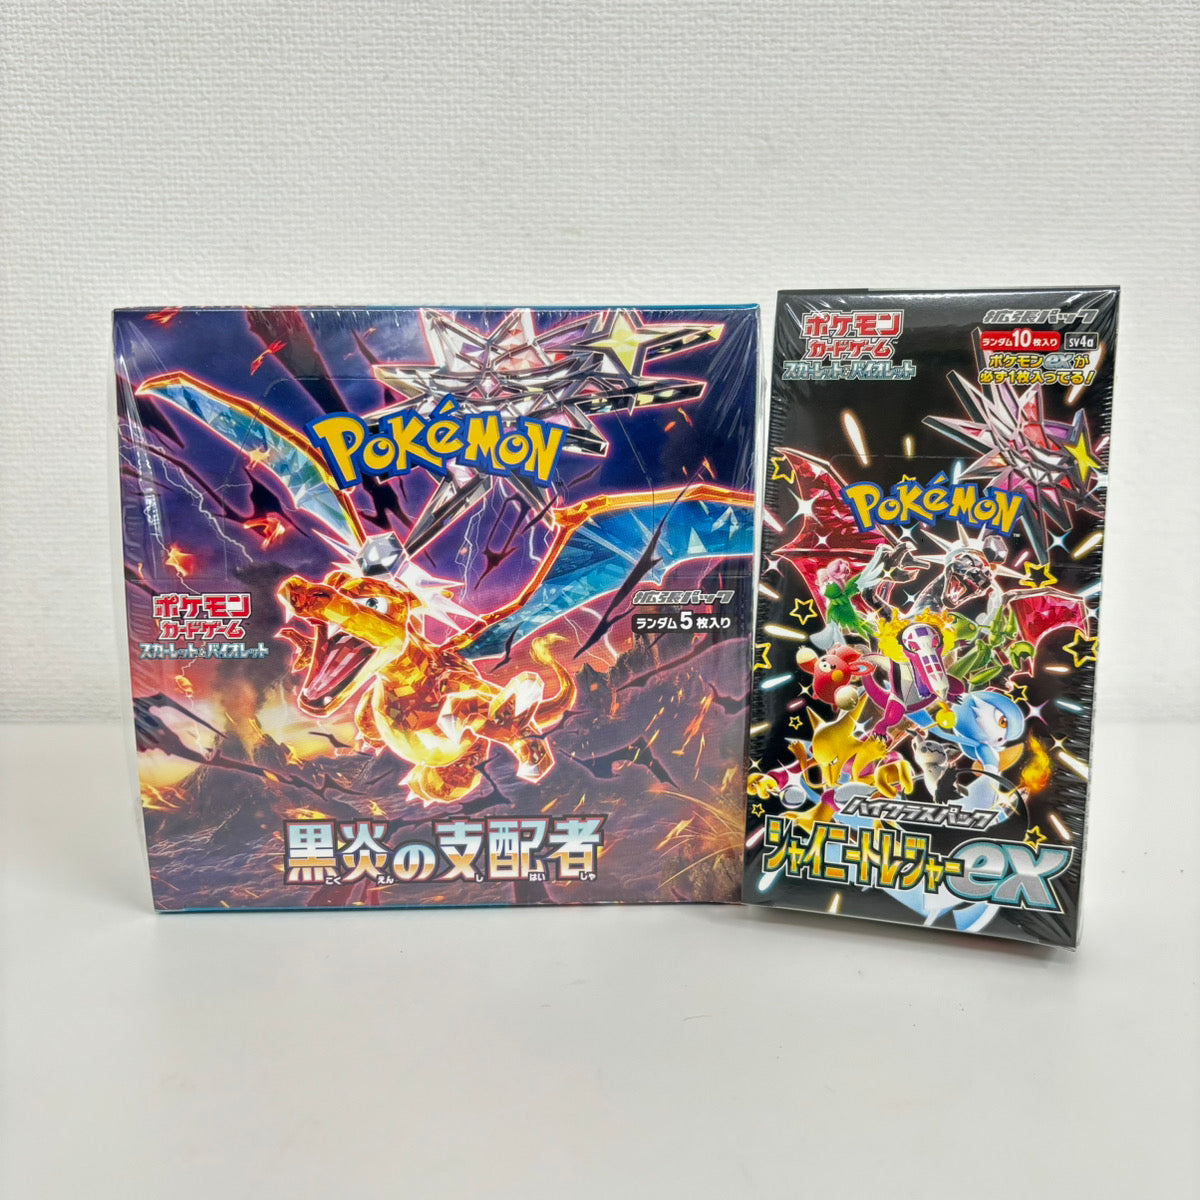 Tarjeta Pokémon Escarlata y Violeta Caja de Refuerzo Gobernante de la Llama Negra y Tesoro Brillante ex set sv3 sv4a Japonés